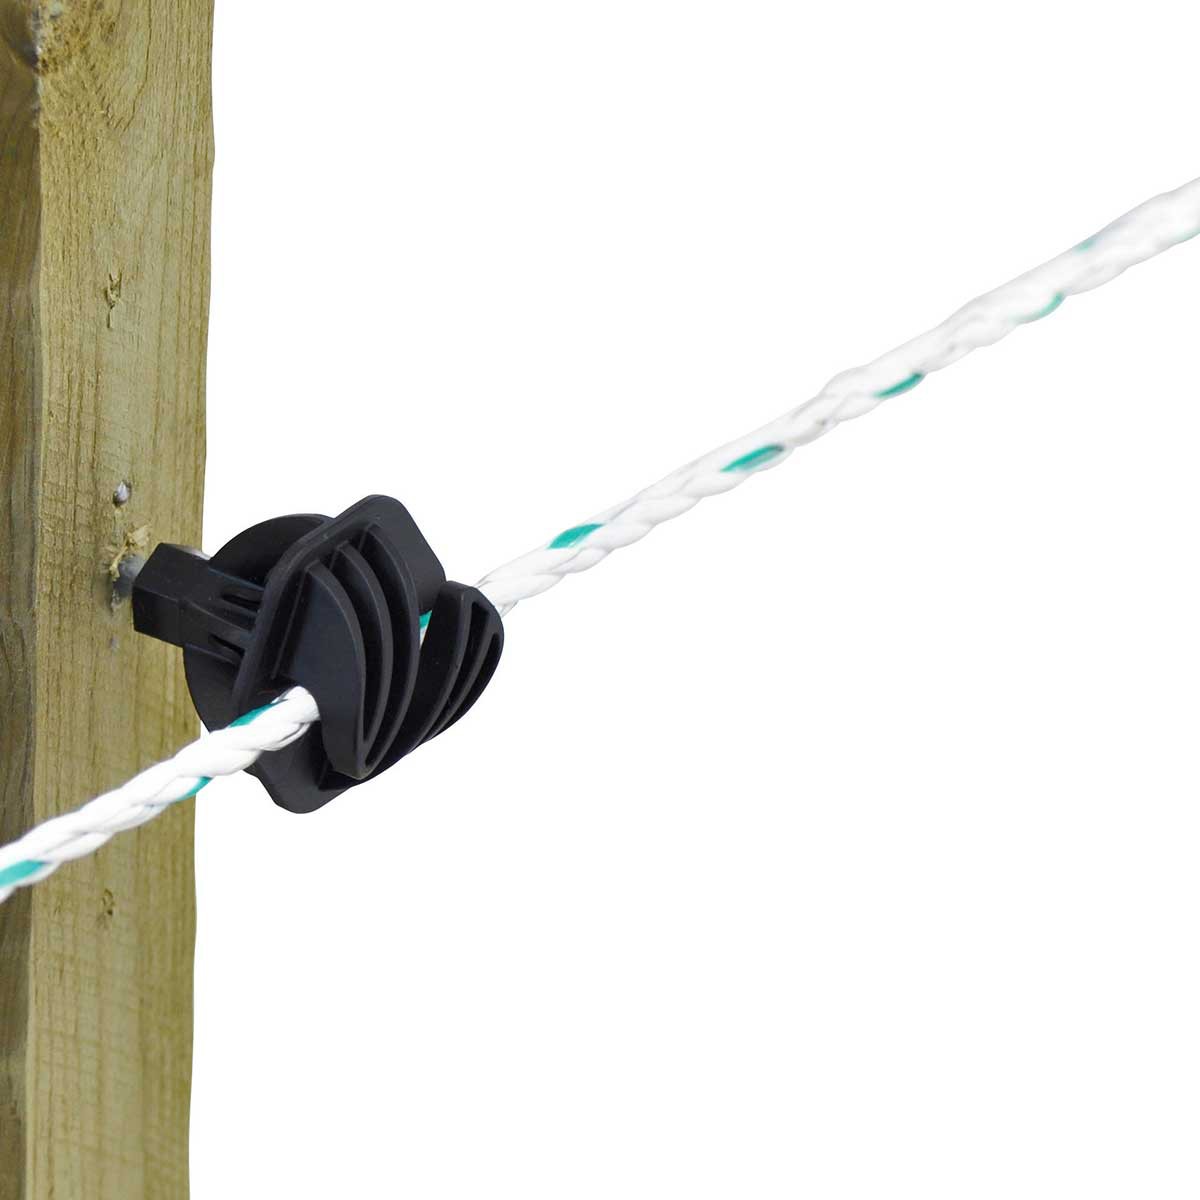 Corde de clôture électrique AKO Premium Line 200m, Ø 6,5mm, 6x0.20 Niro + 3x0.25 cuivre, blanc-vert